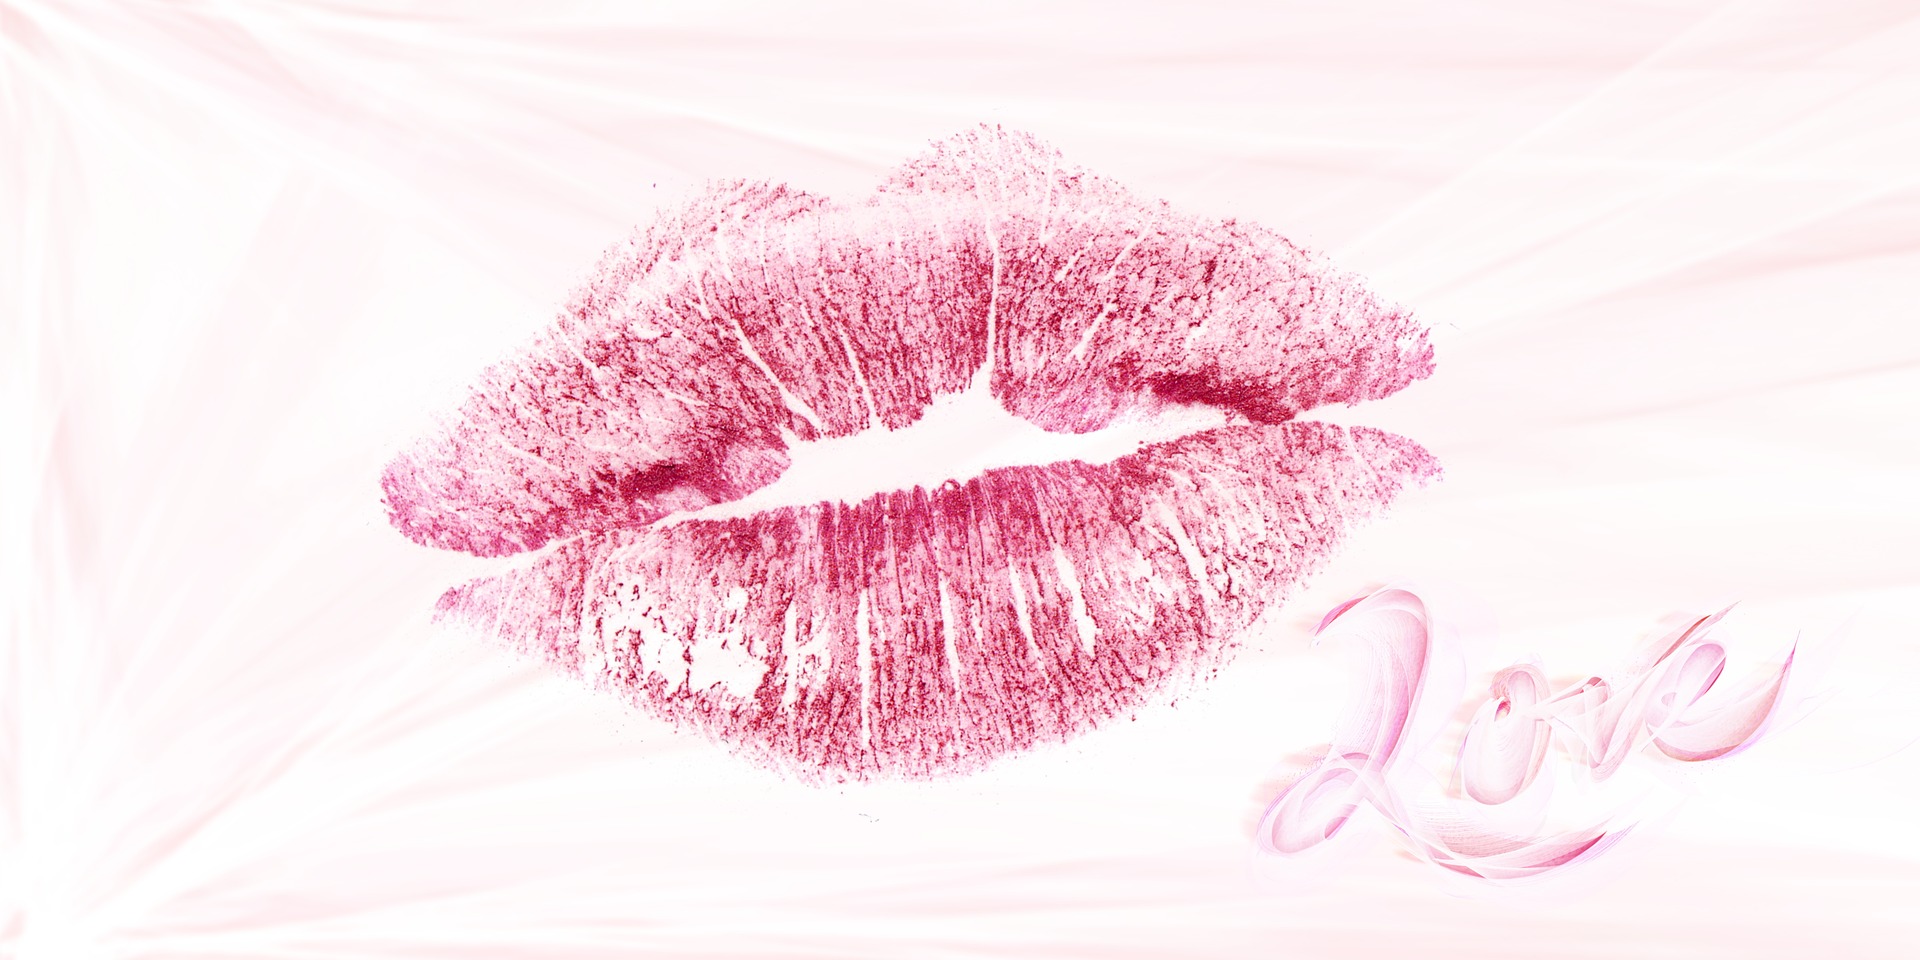 Lippenstiftabdruck nach einem Kuss